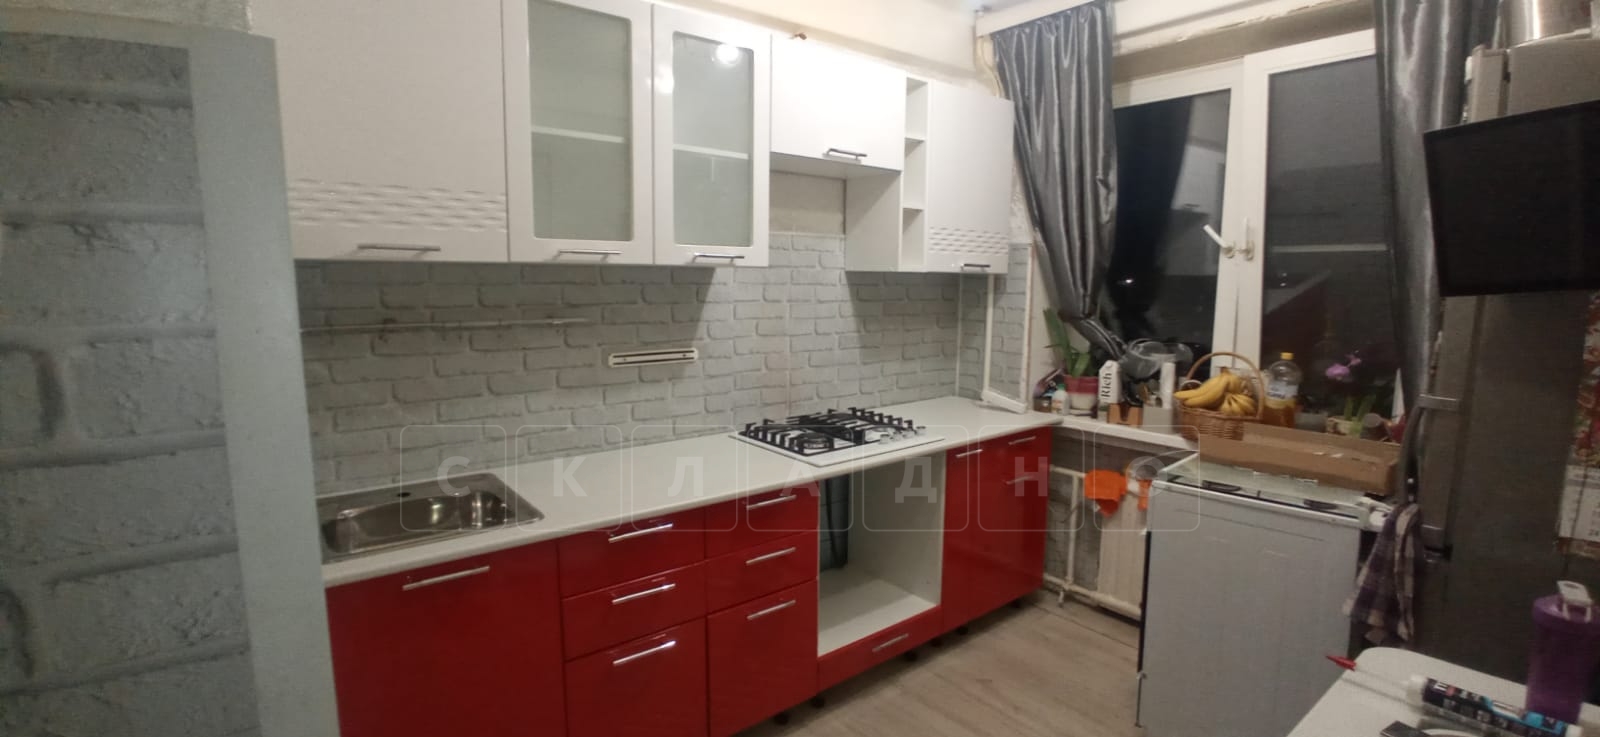 Кухонный гарнитур Асти красный с белым 2,0 м фото 3 | интернет-магазин Складно